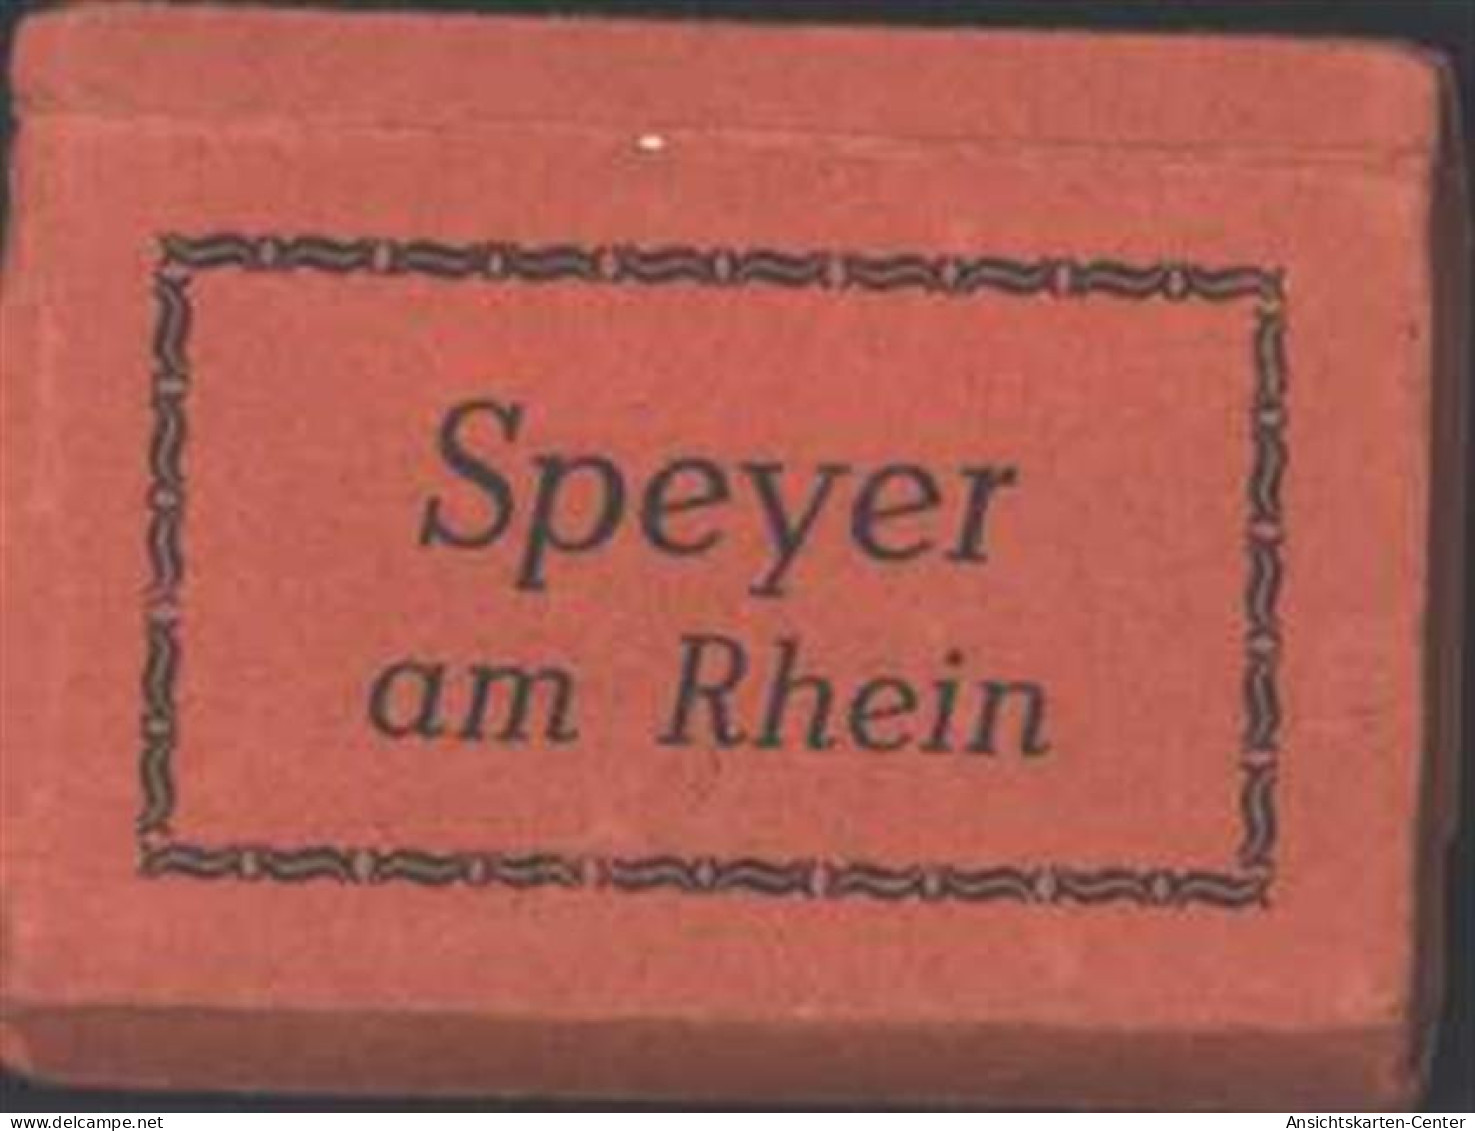 13807208 - Speyer - Speyer